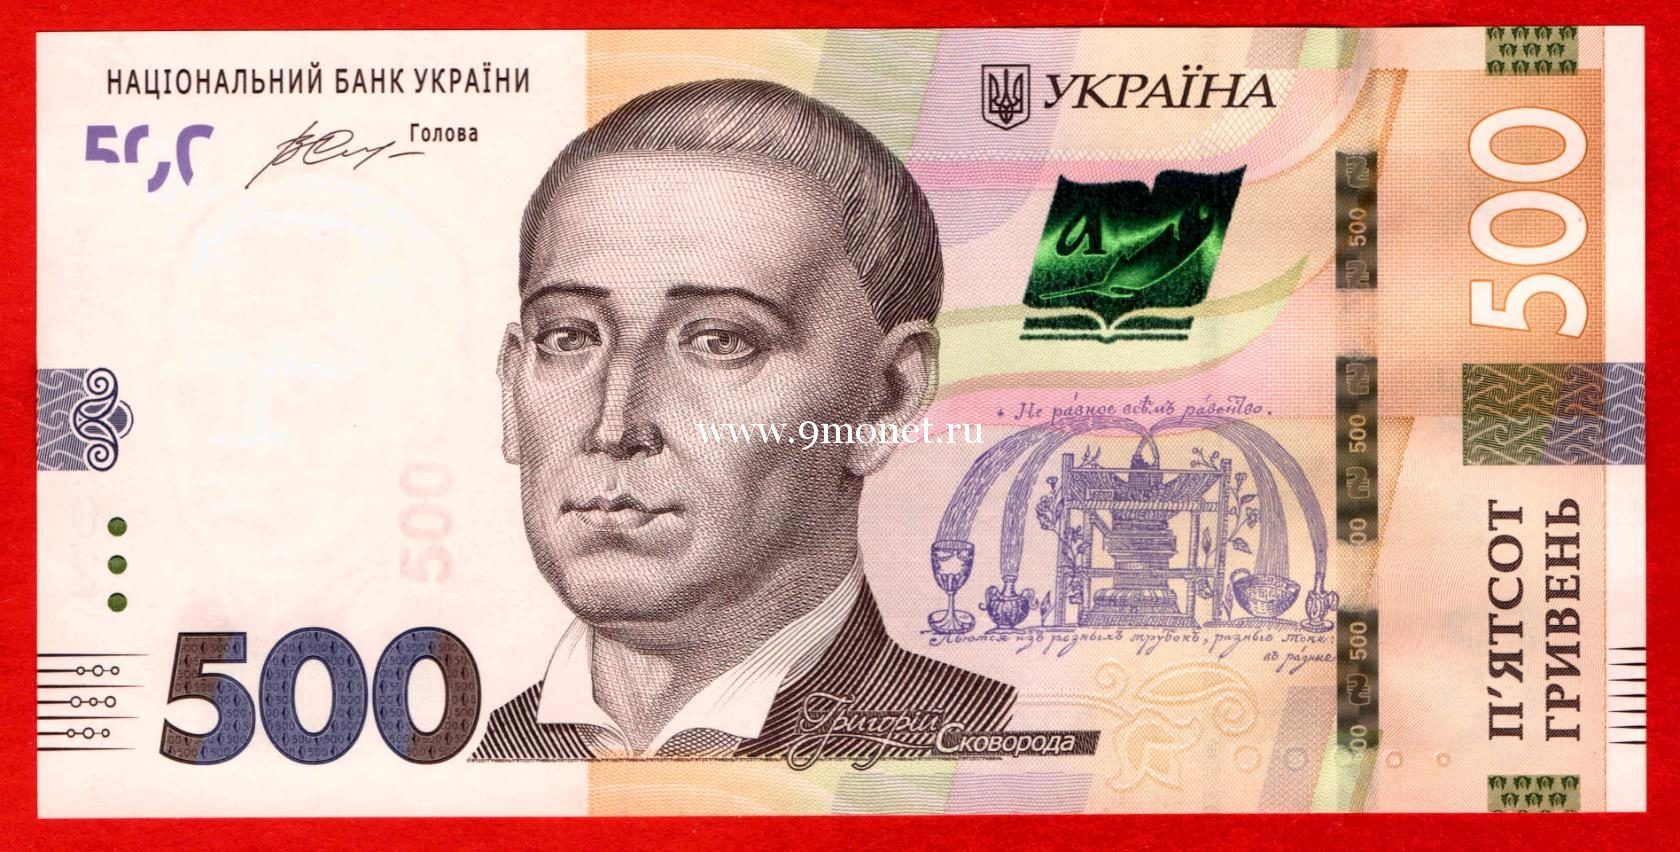 2015 год. Украина. Банкнота 500 гривен. UNC